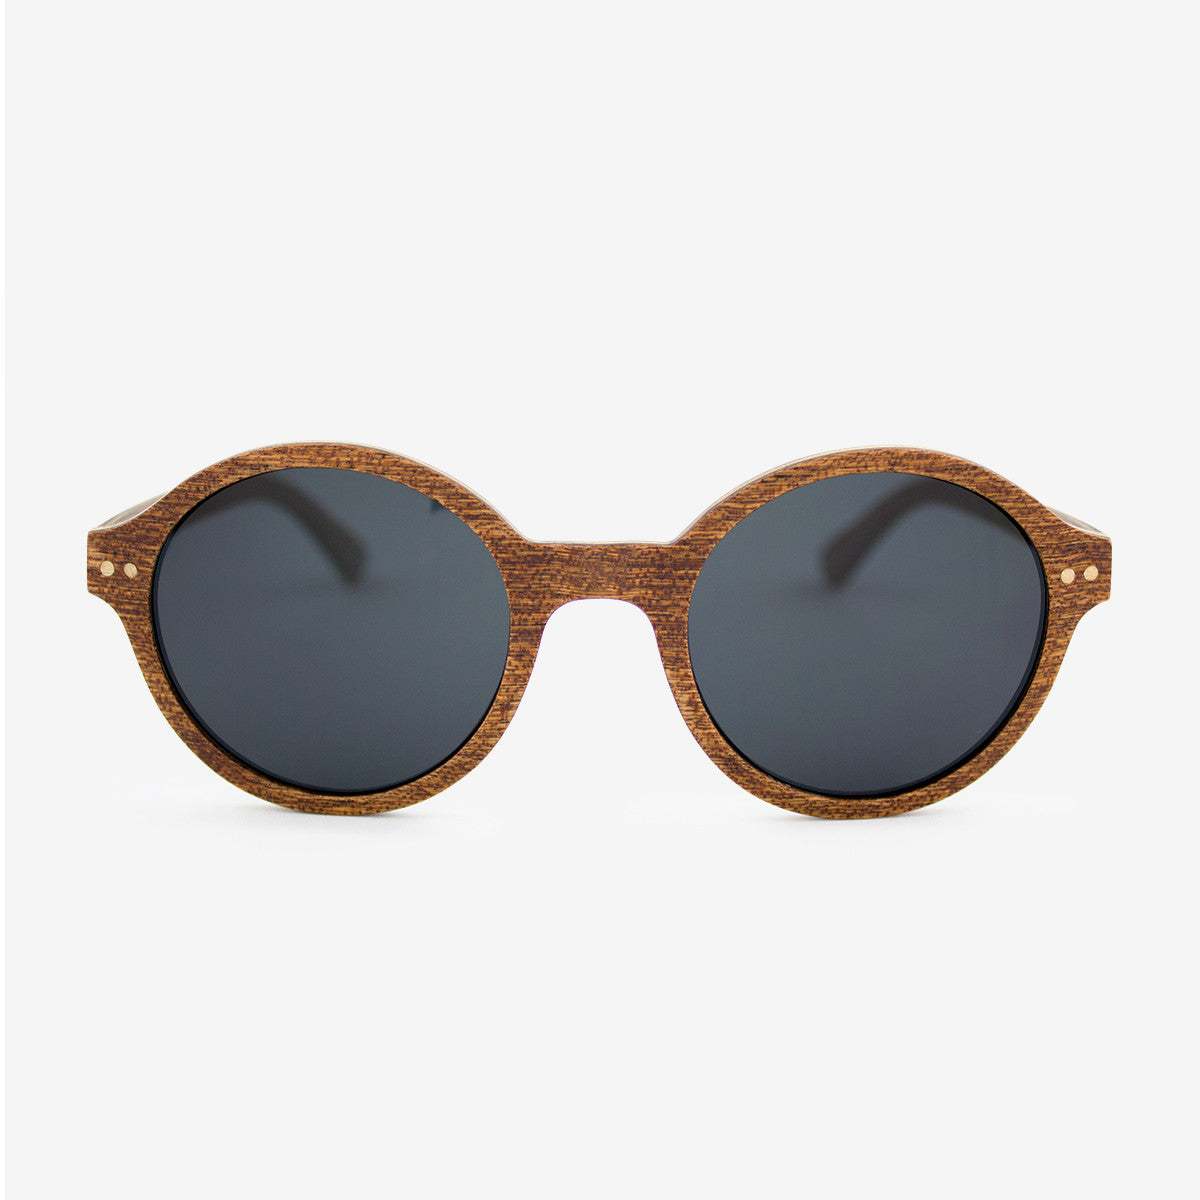 Gables sapele adjustable wood sunglasses